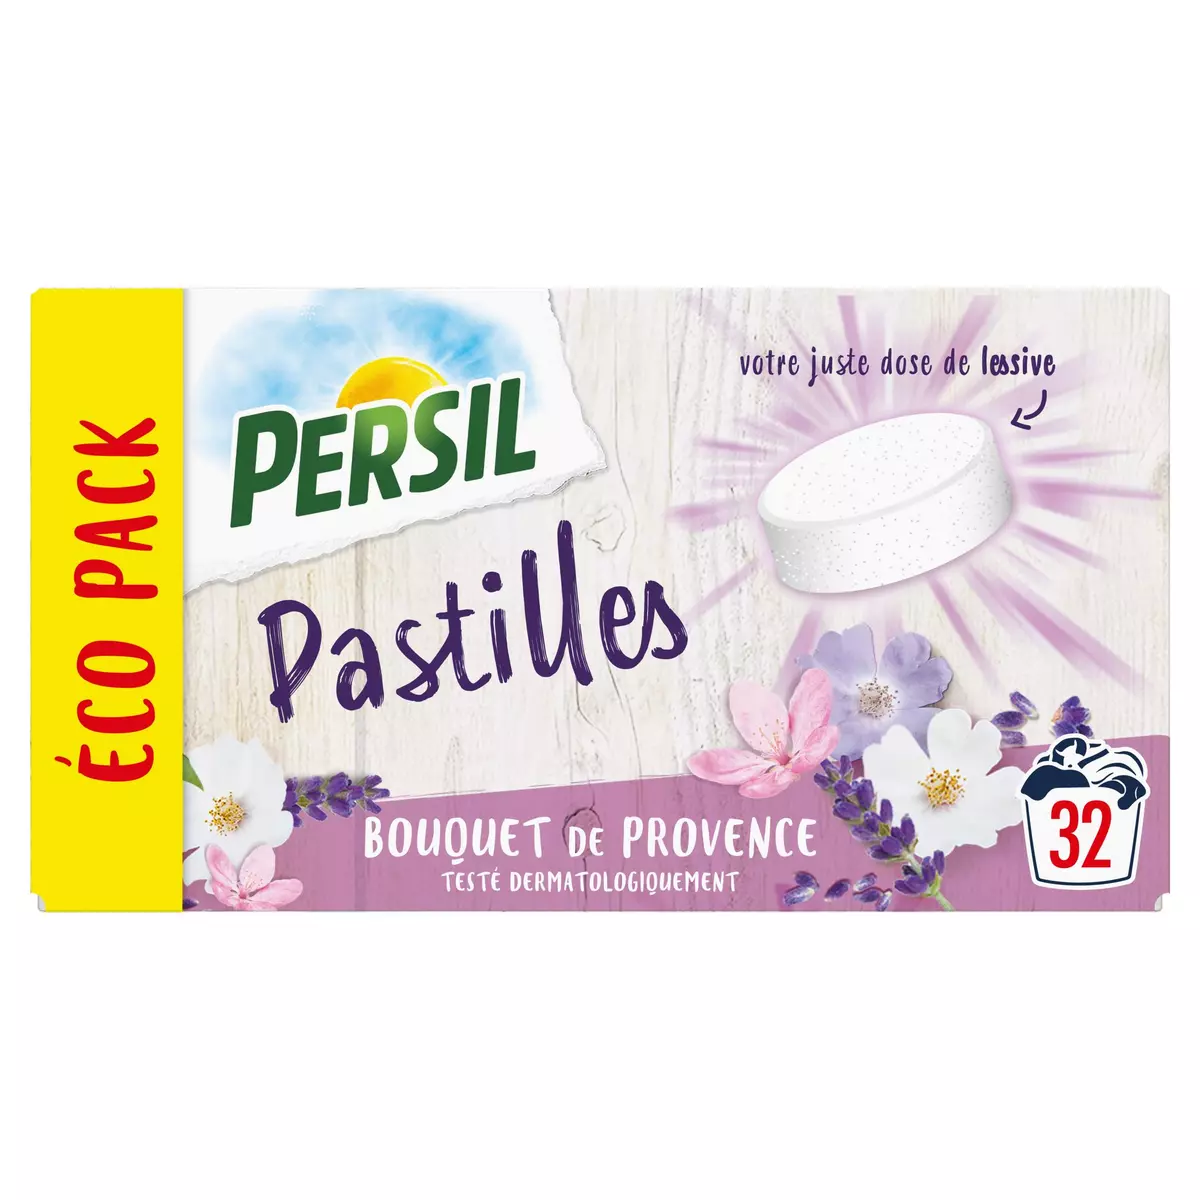 PERSIL Lessive pastille bouquet de Provence 32 pastilles